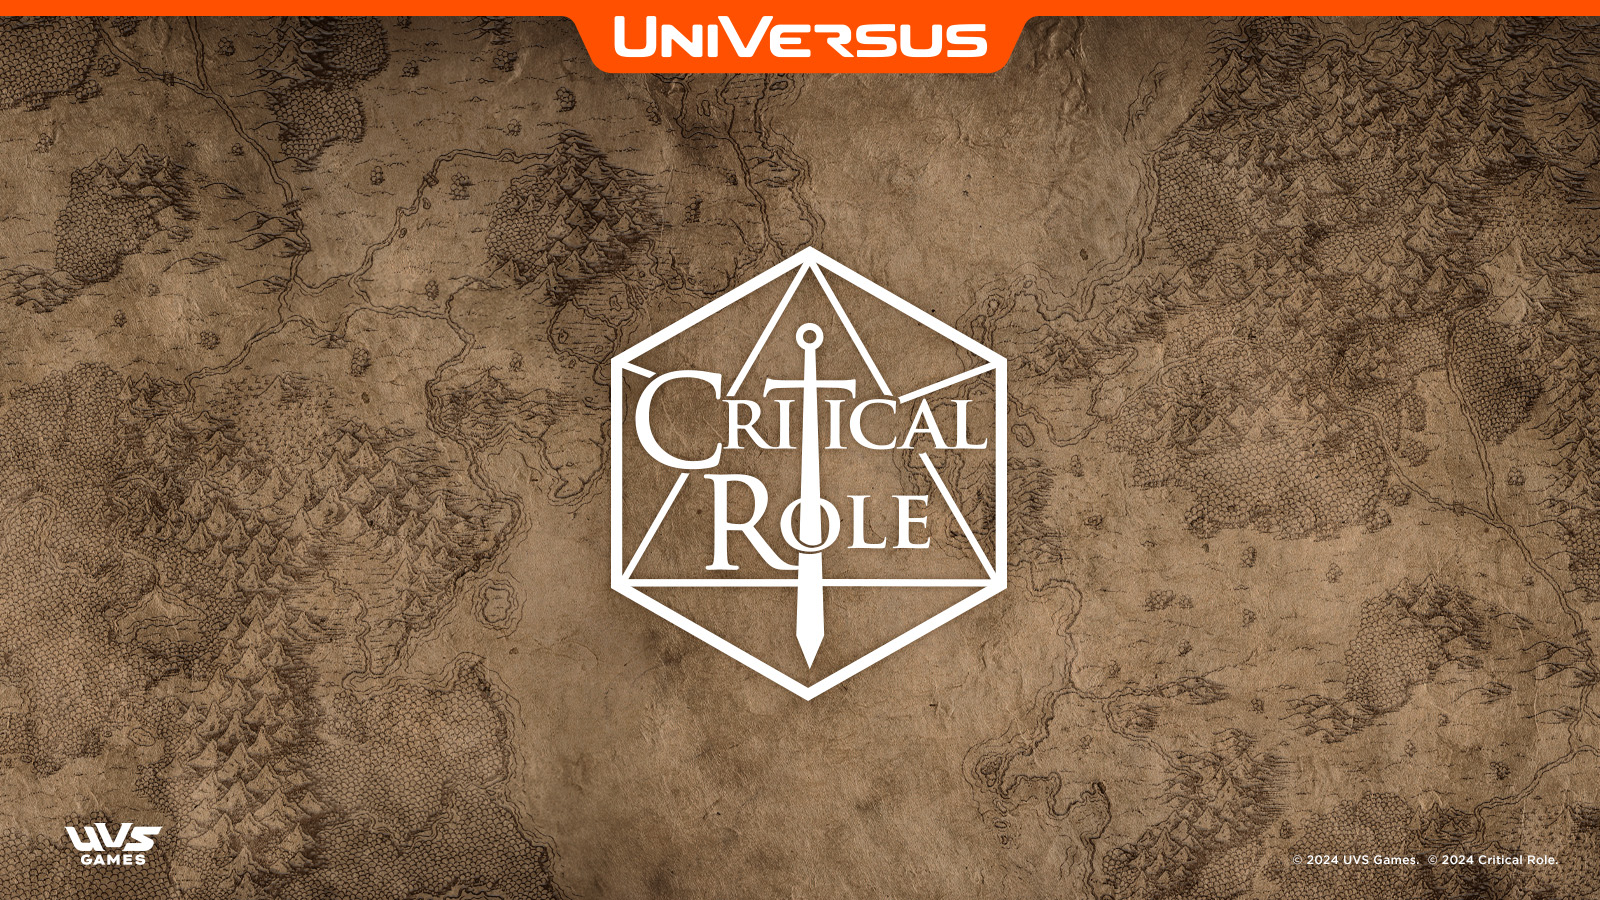 UniVersus Critical Role Simple Logo Splash Banner